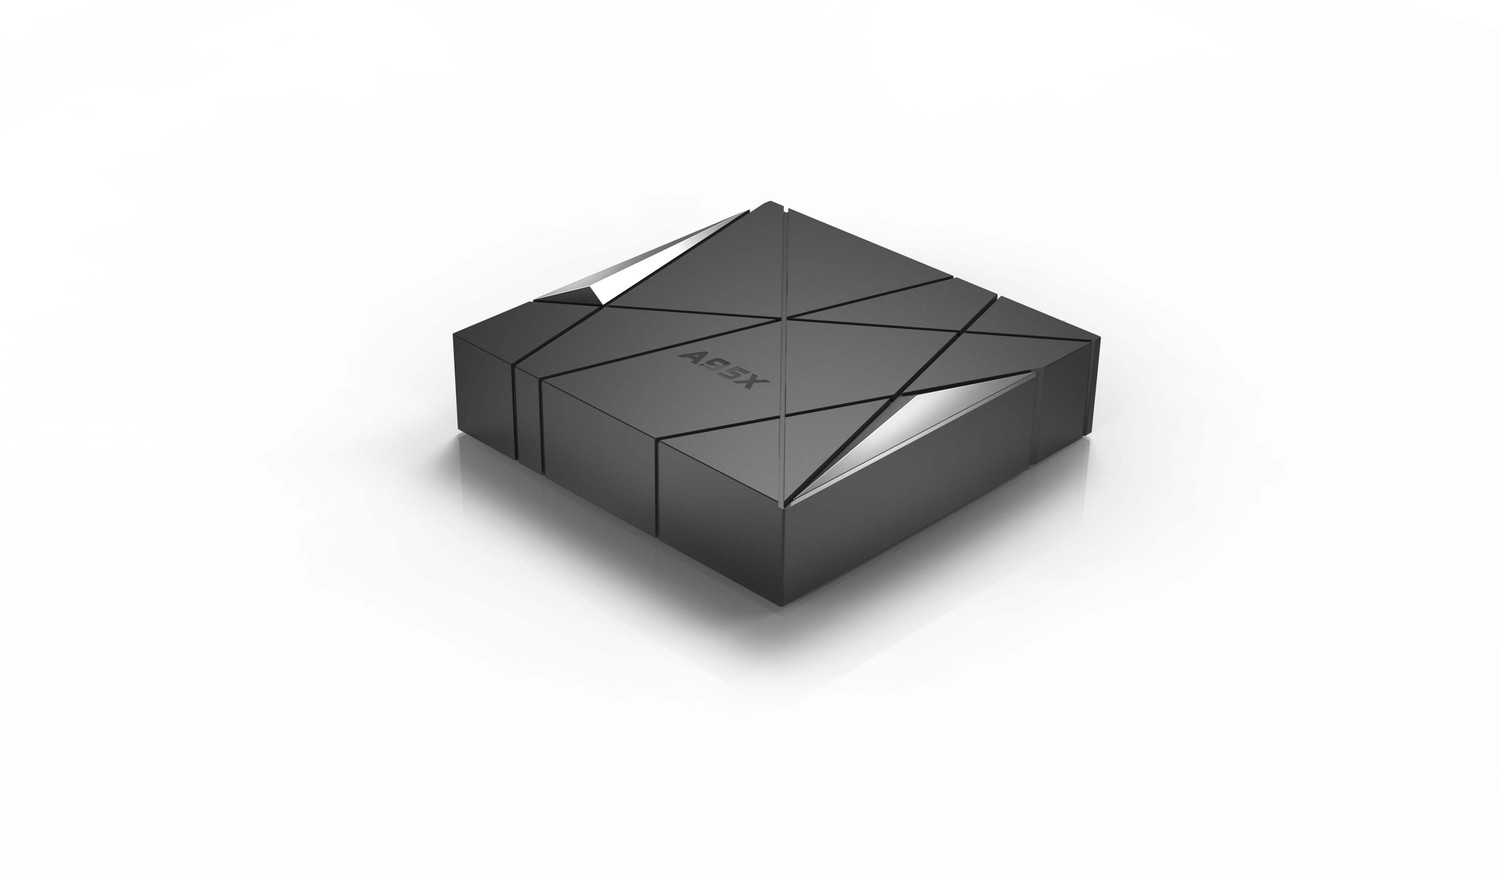 第二款机顶盒设计，怡觉采用了纵横交错线的设计  同时，两侧切割出的三角部分运用立体三角，增加三维立体感，整体充满科技感和几何感。